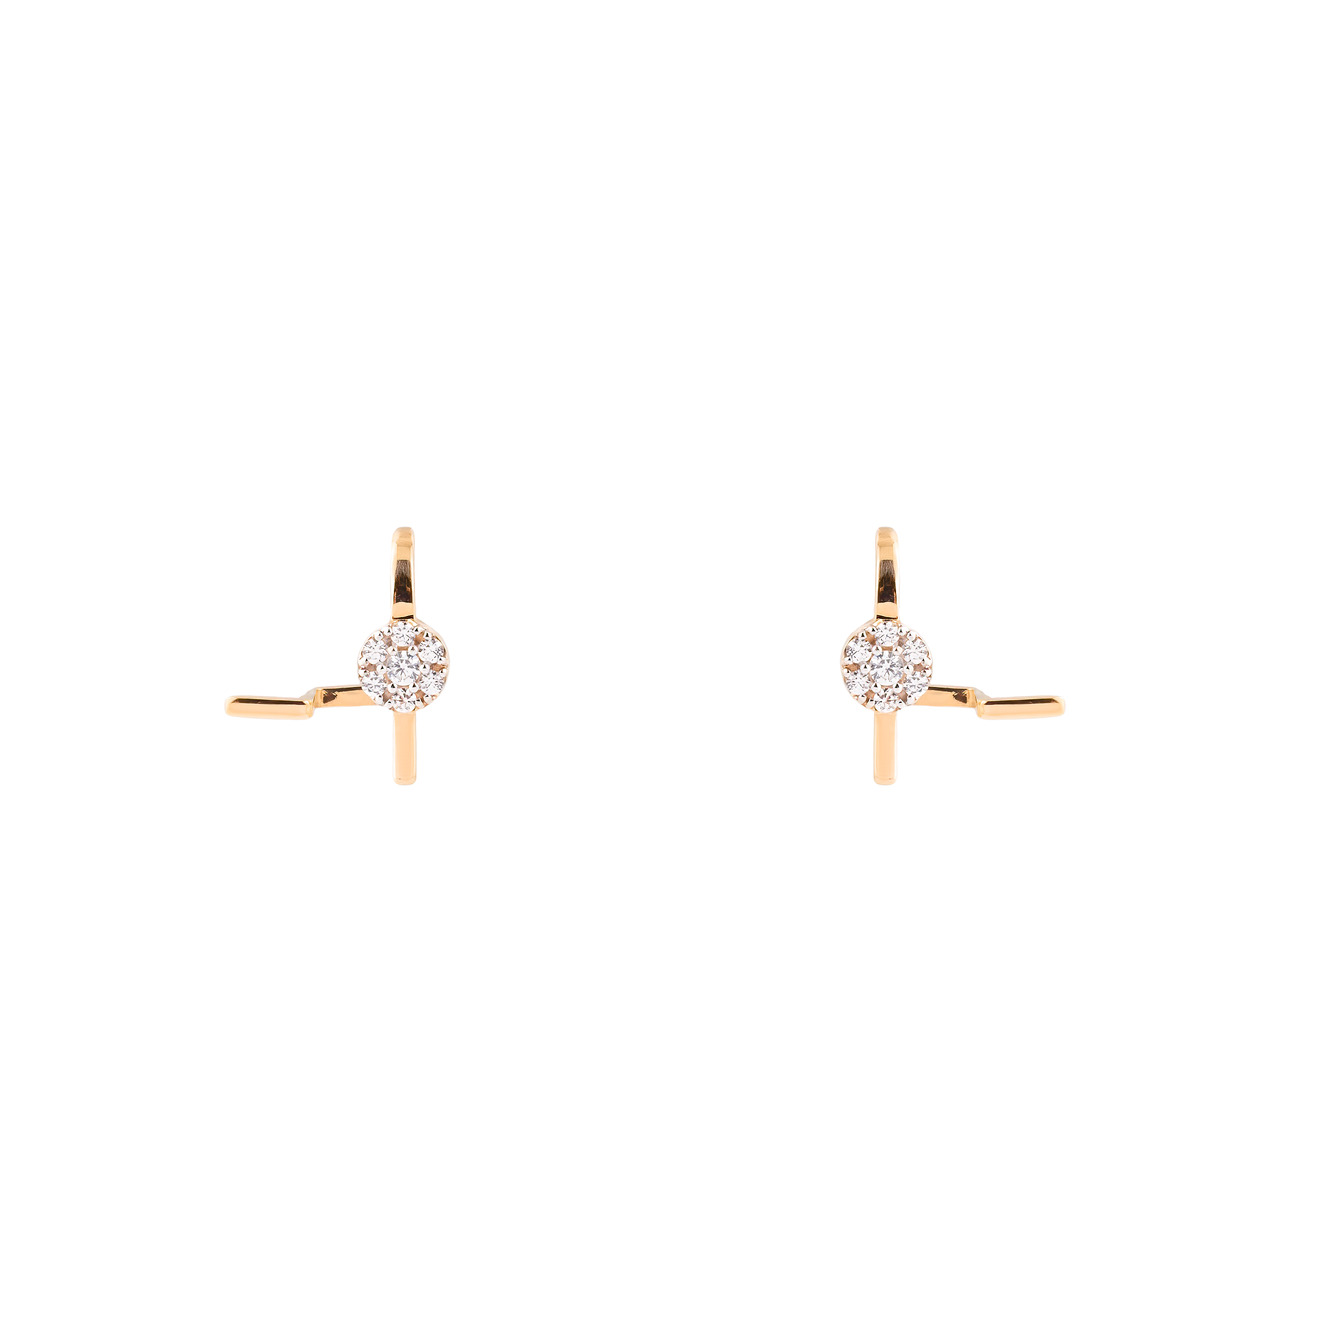 Herald Percy Diamonds Золотые серьги-клаймберы с крупным кристаллом